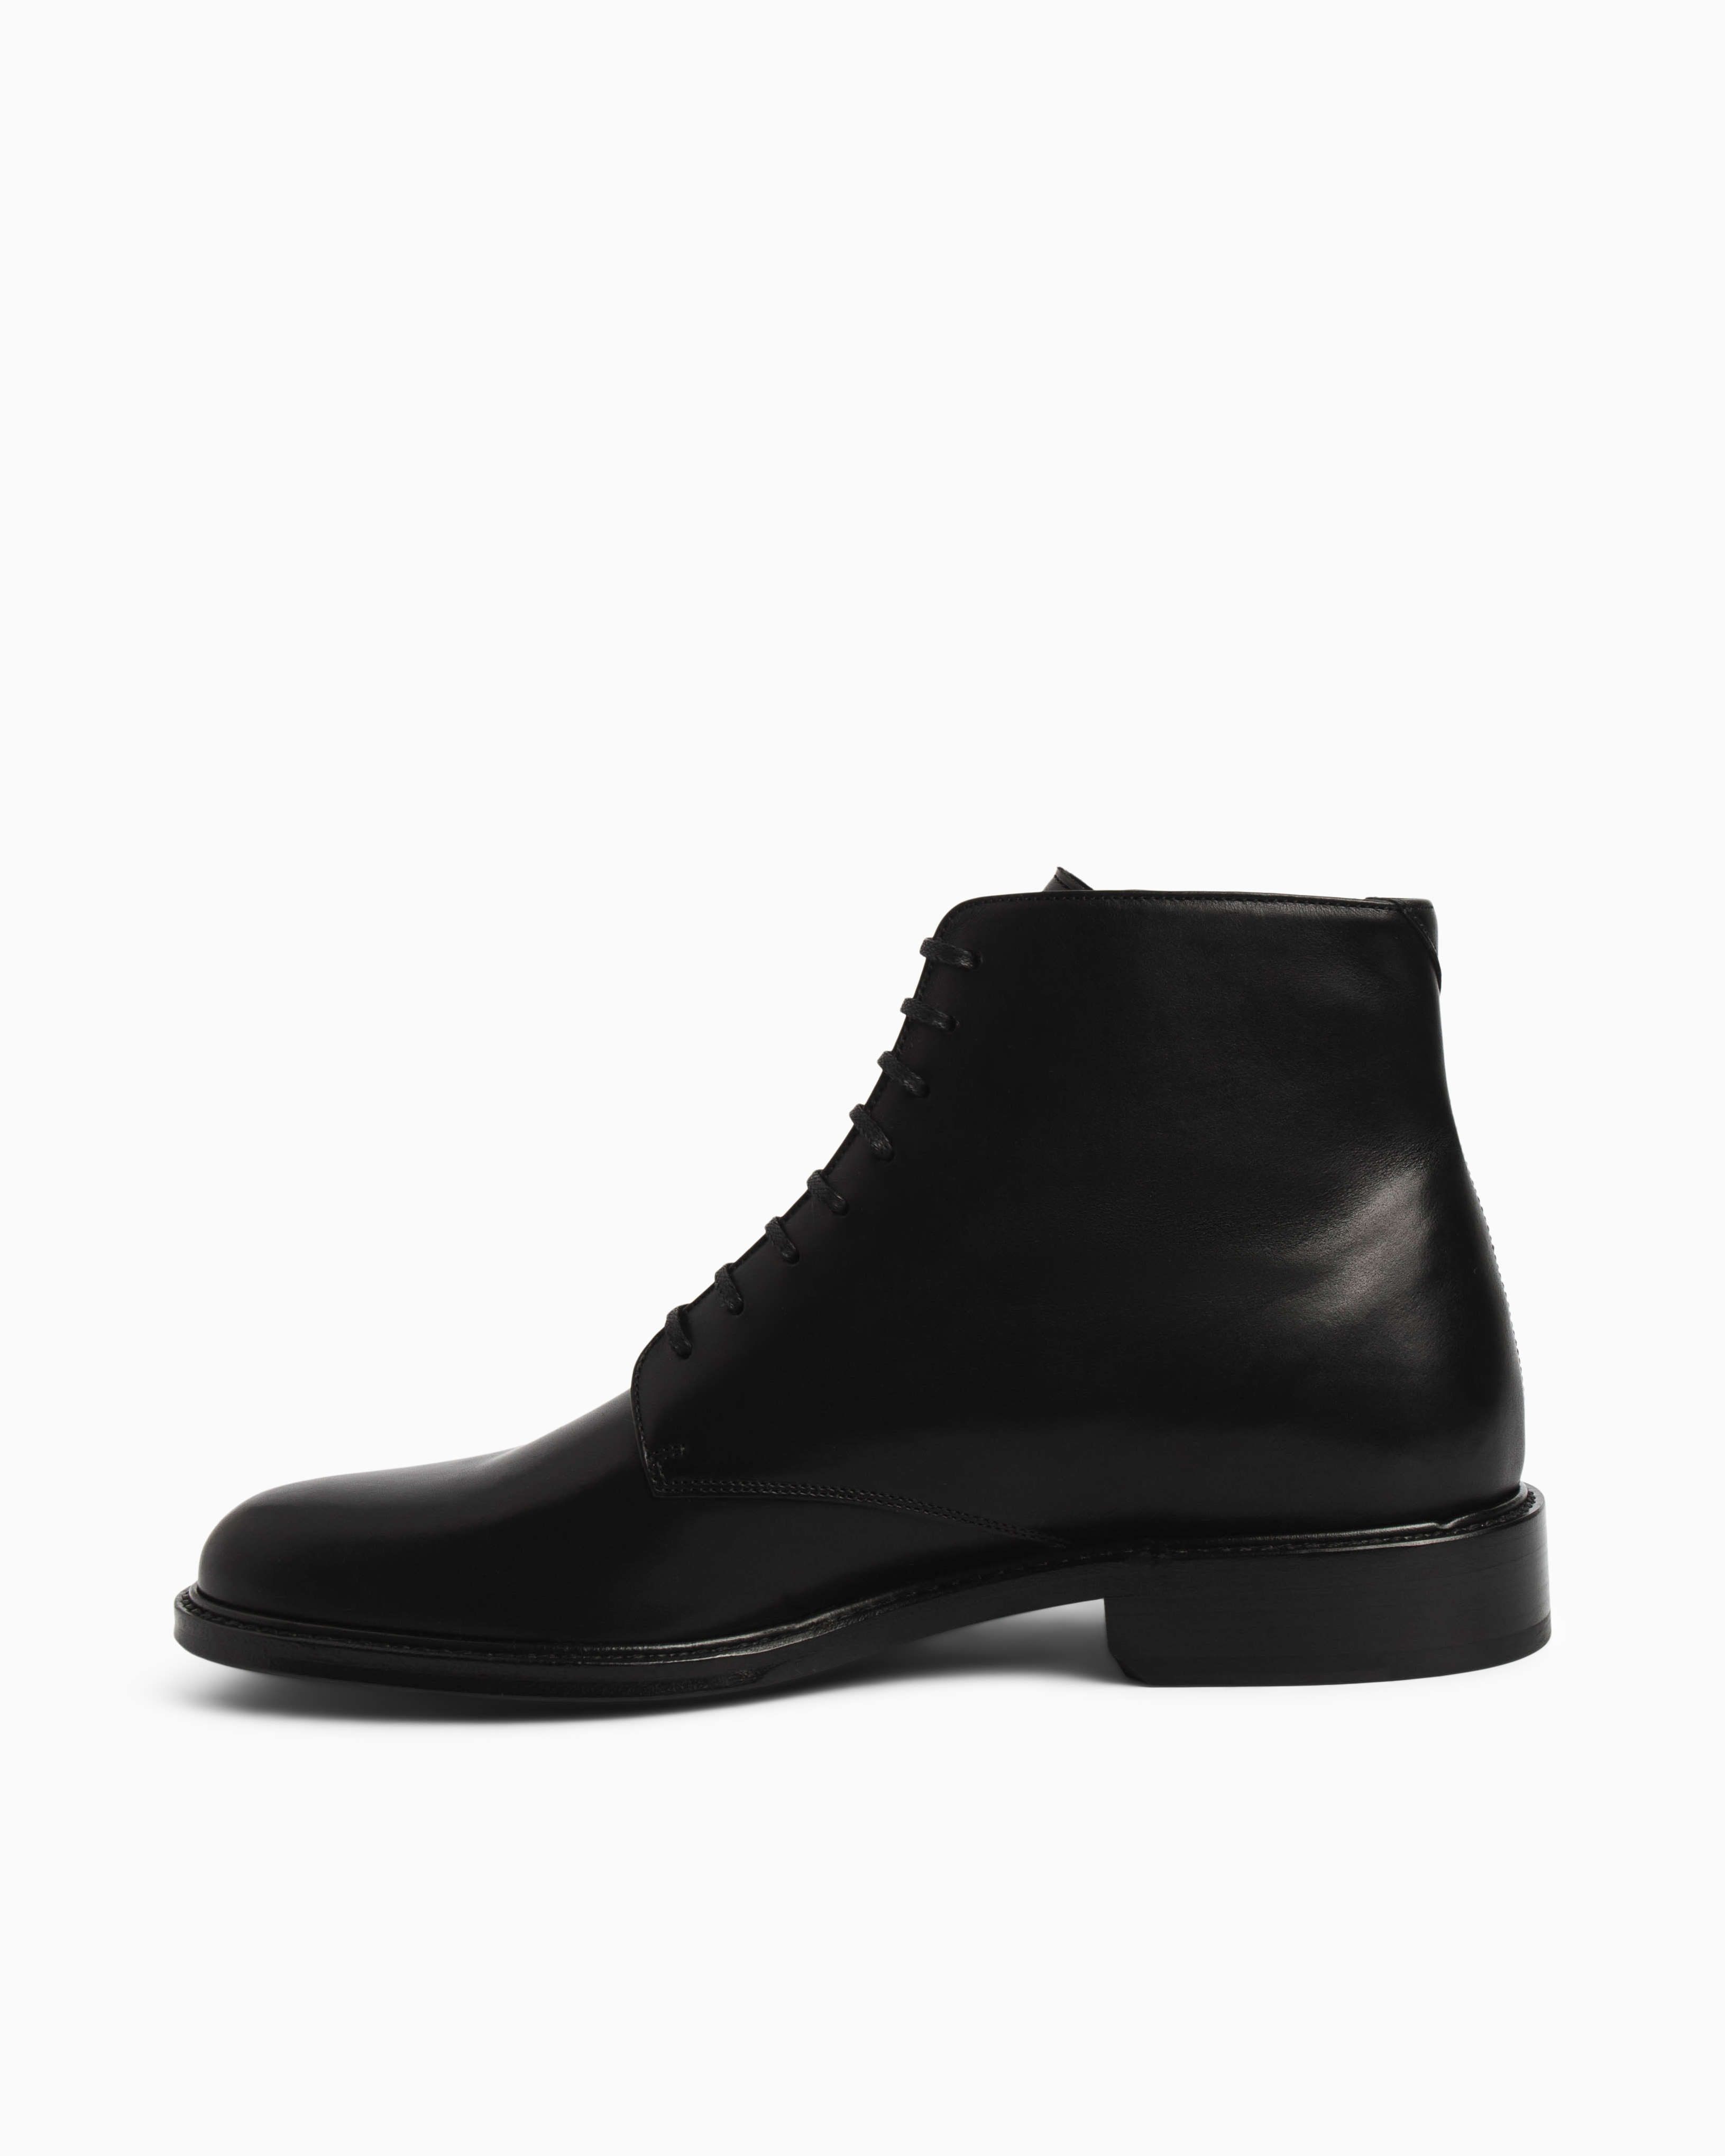 黒BlackサイズSaint Laurent Army Lace Up Boot サイズ41